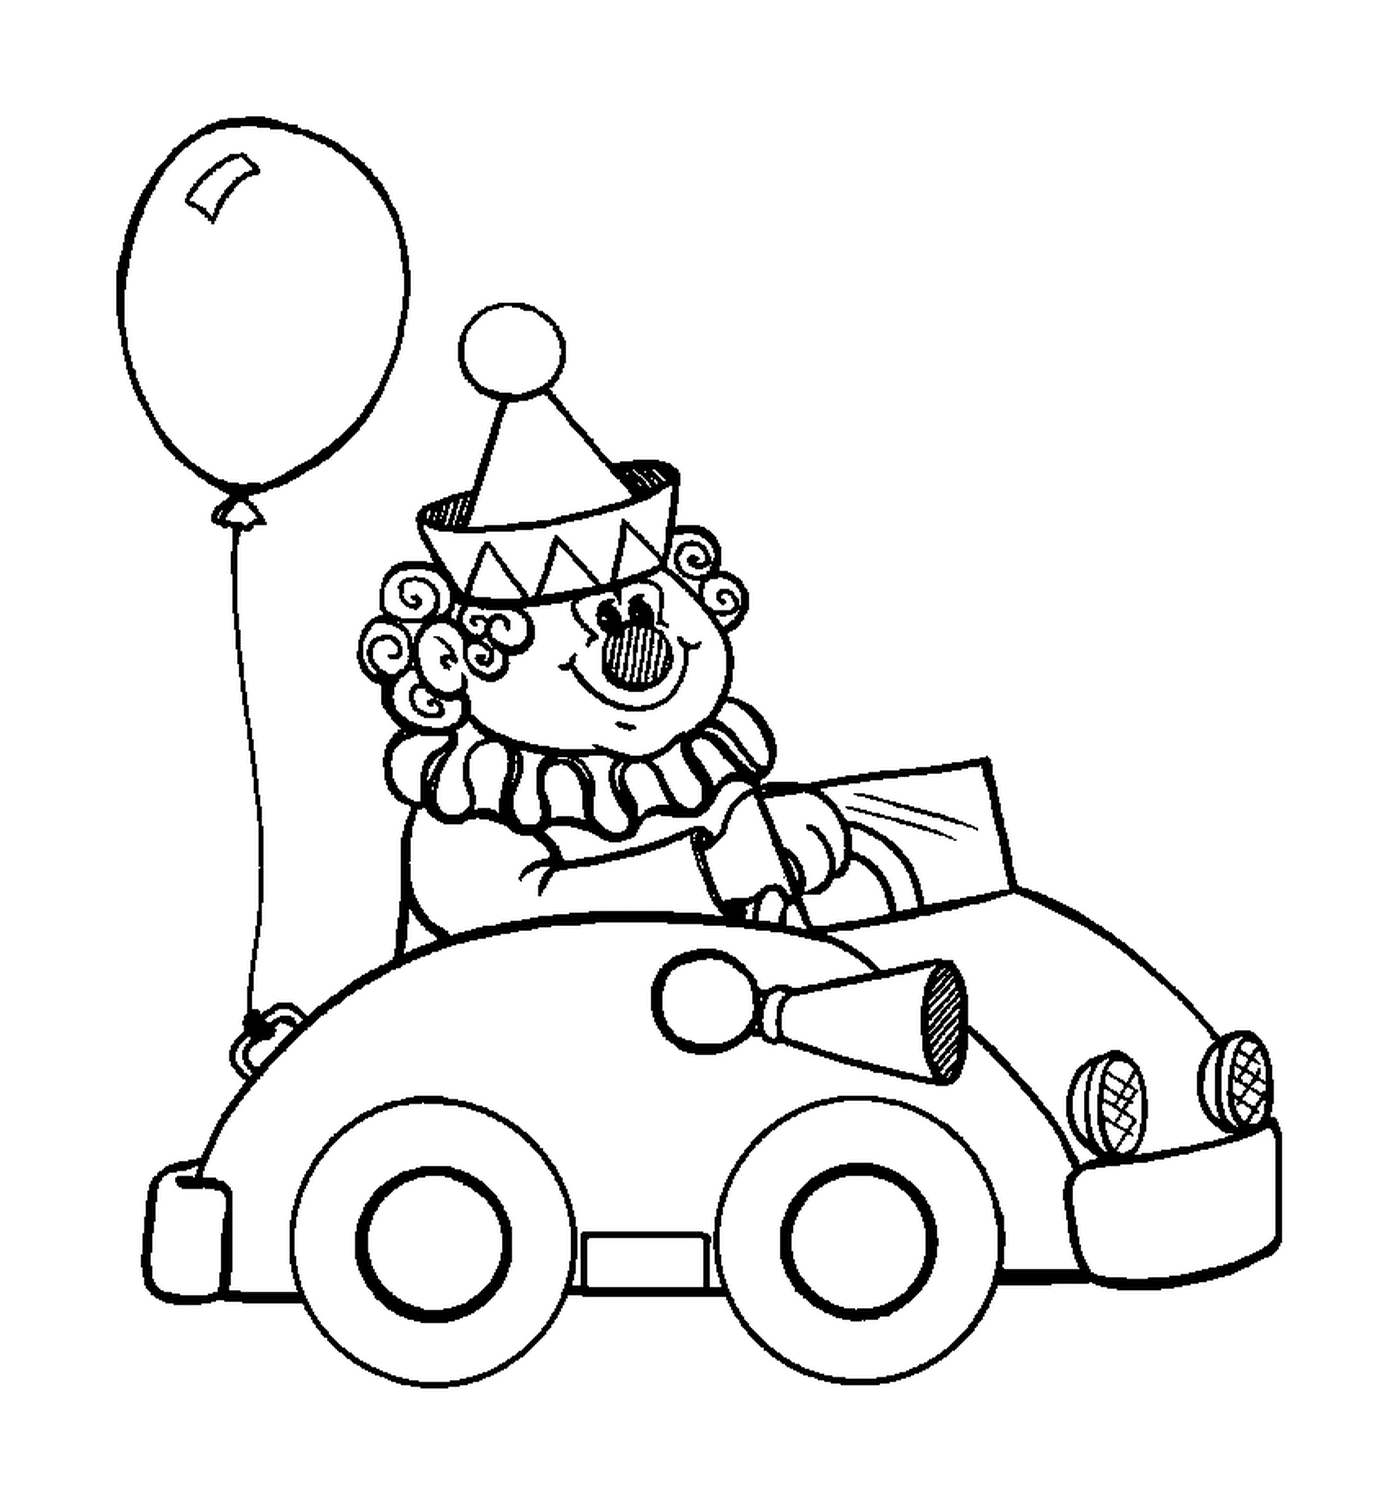  Ein Clown im Auto für den Zirkus 